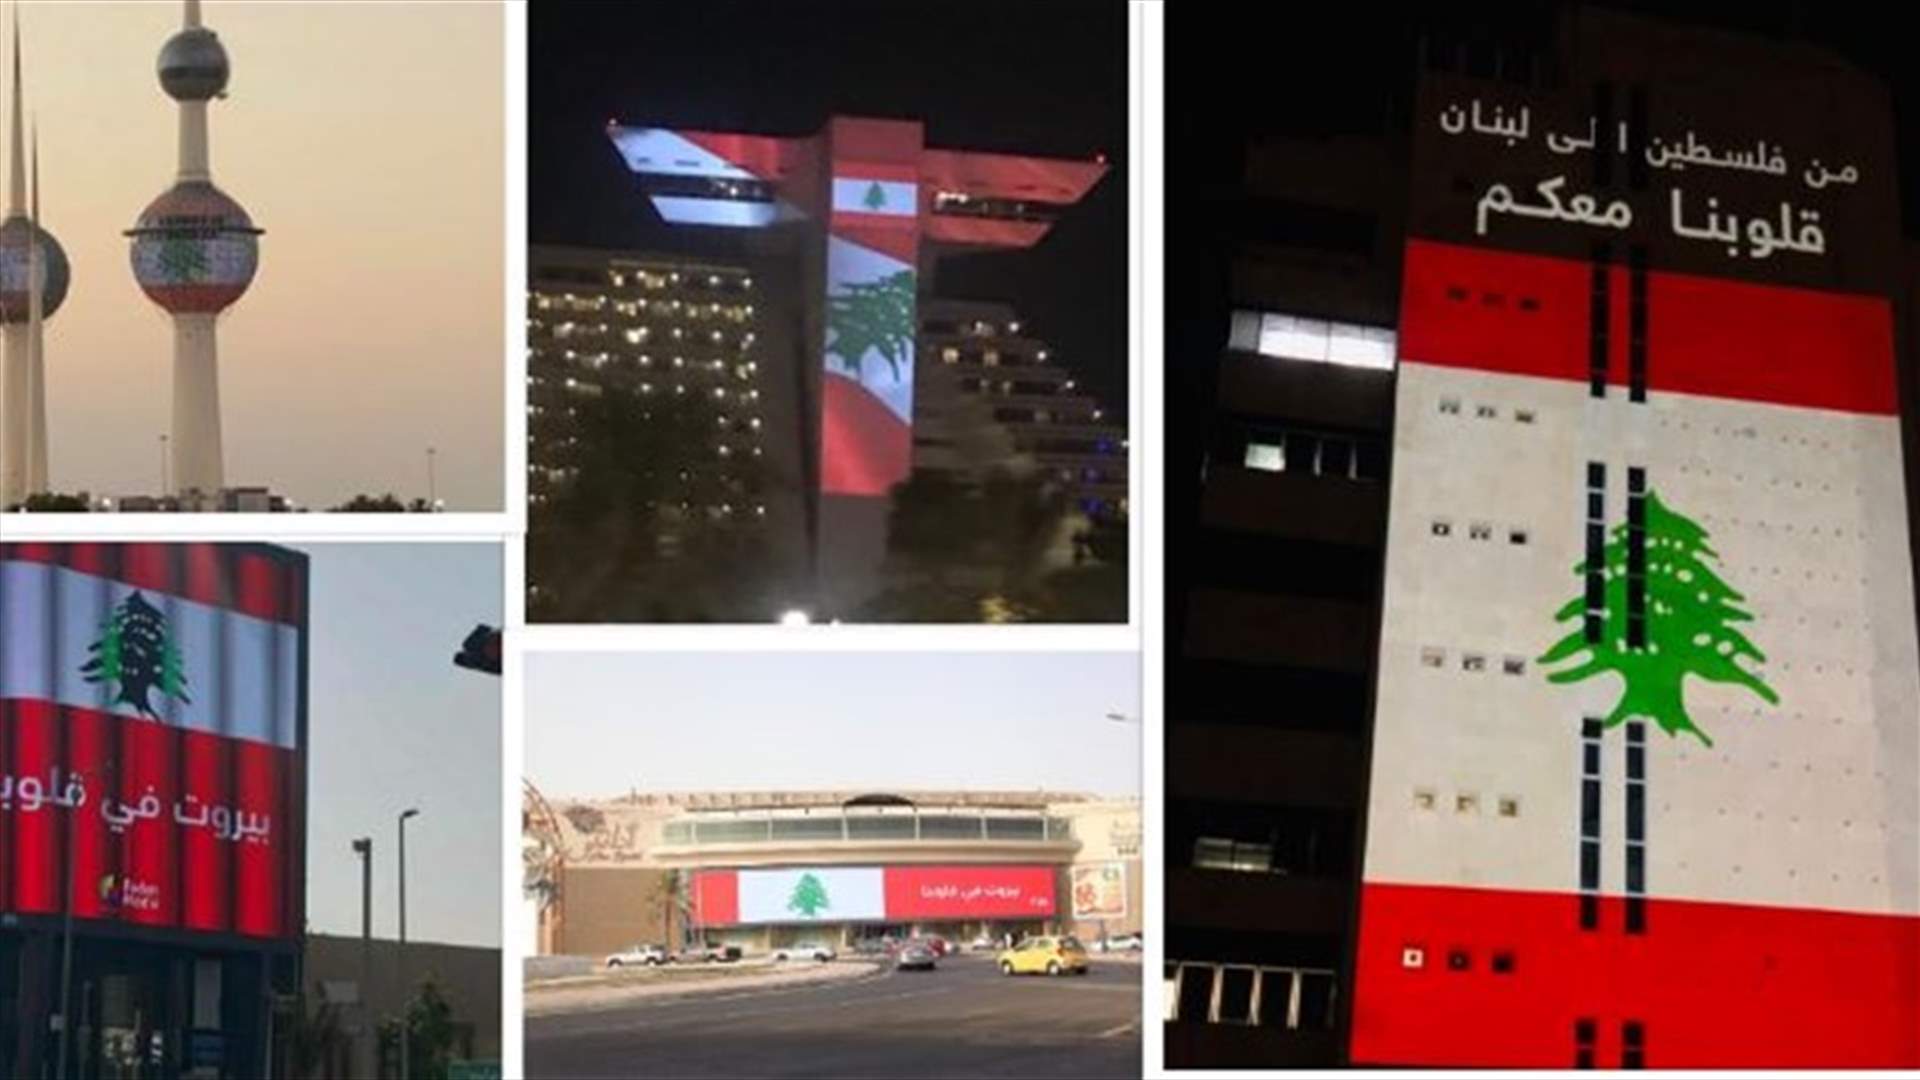 بعد انفجار بيروت... الدول العربية تتضامن مع لبنان وتتزيّن بألوان علمه (صور)